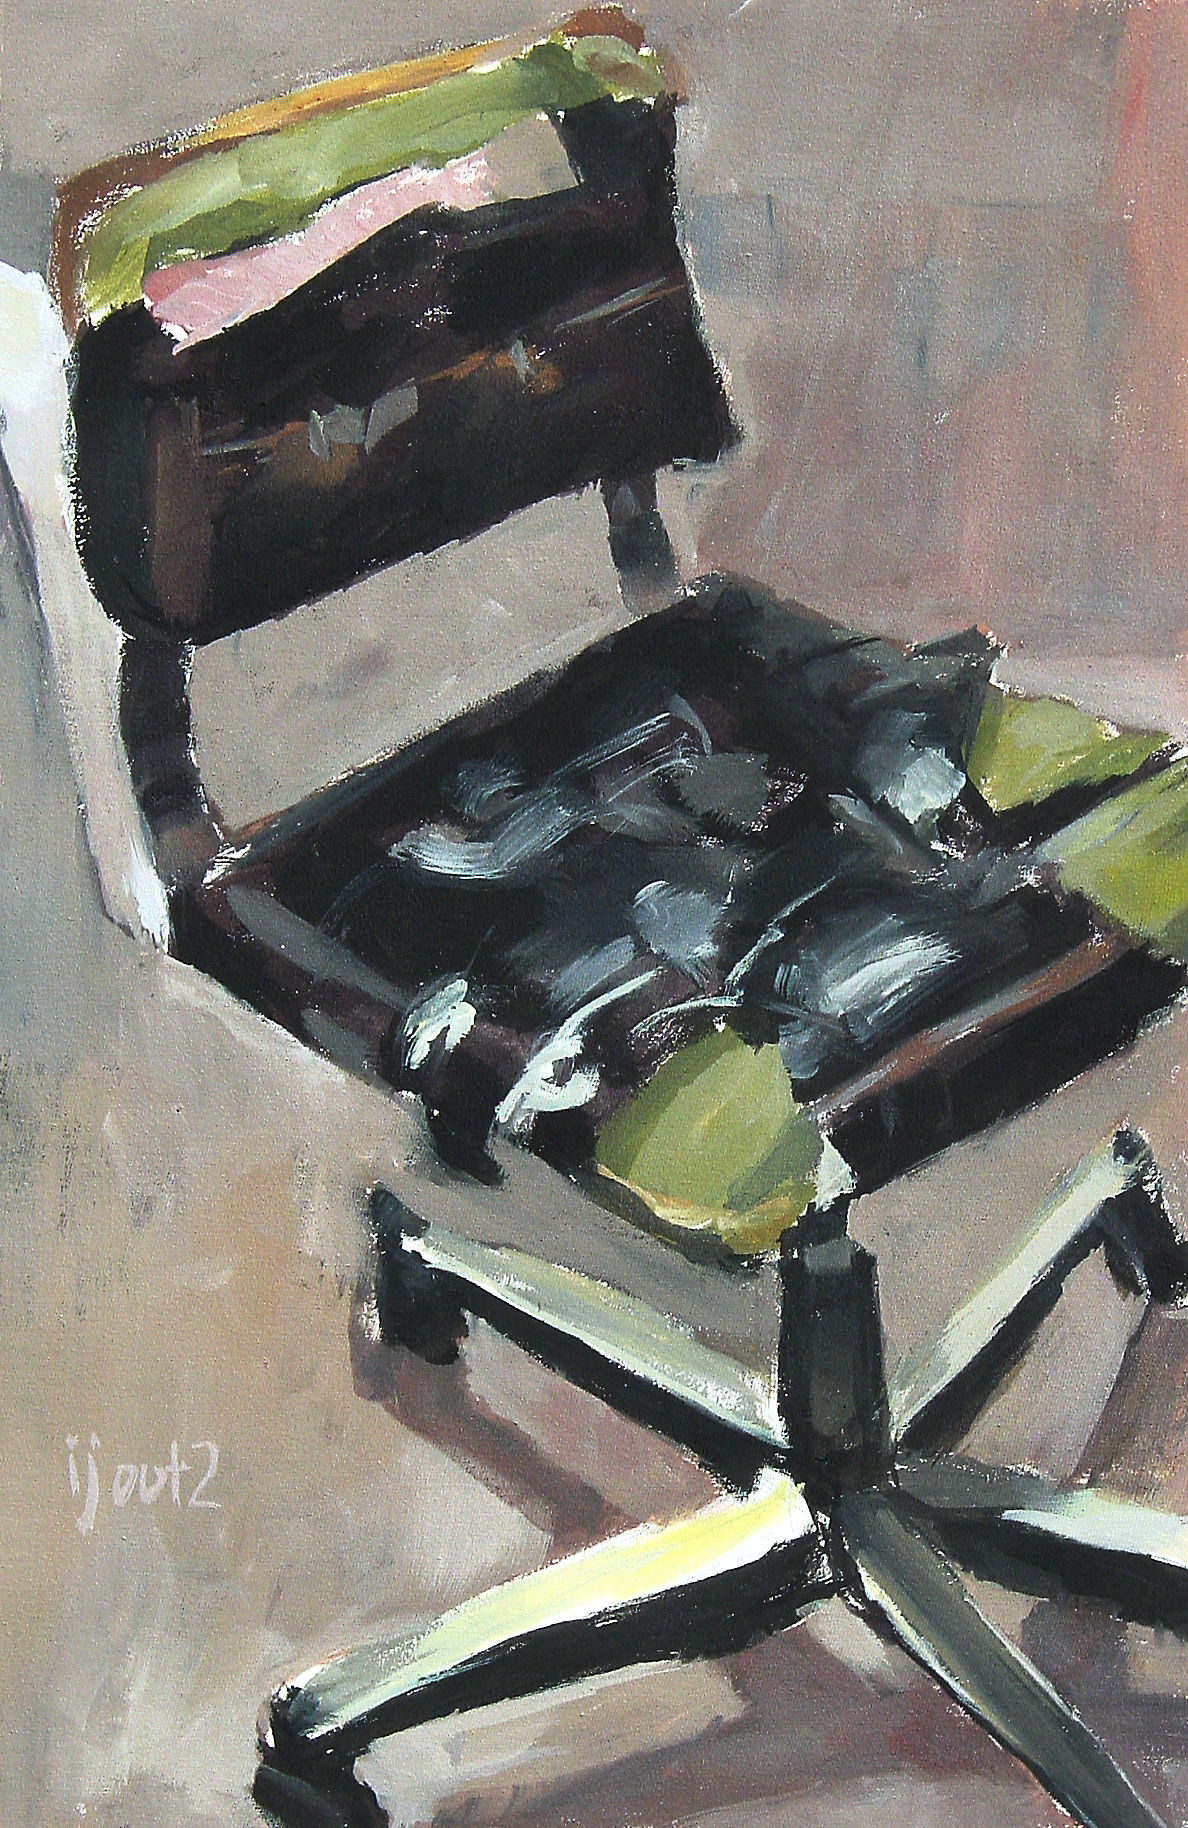 pintura de uma cadeira de escritório rasgada